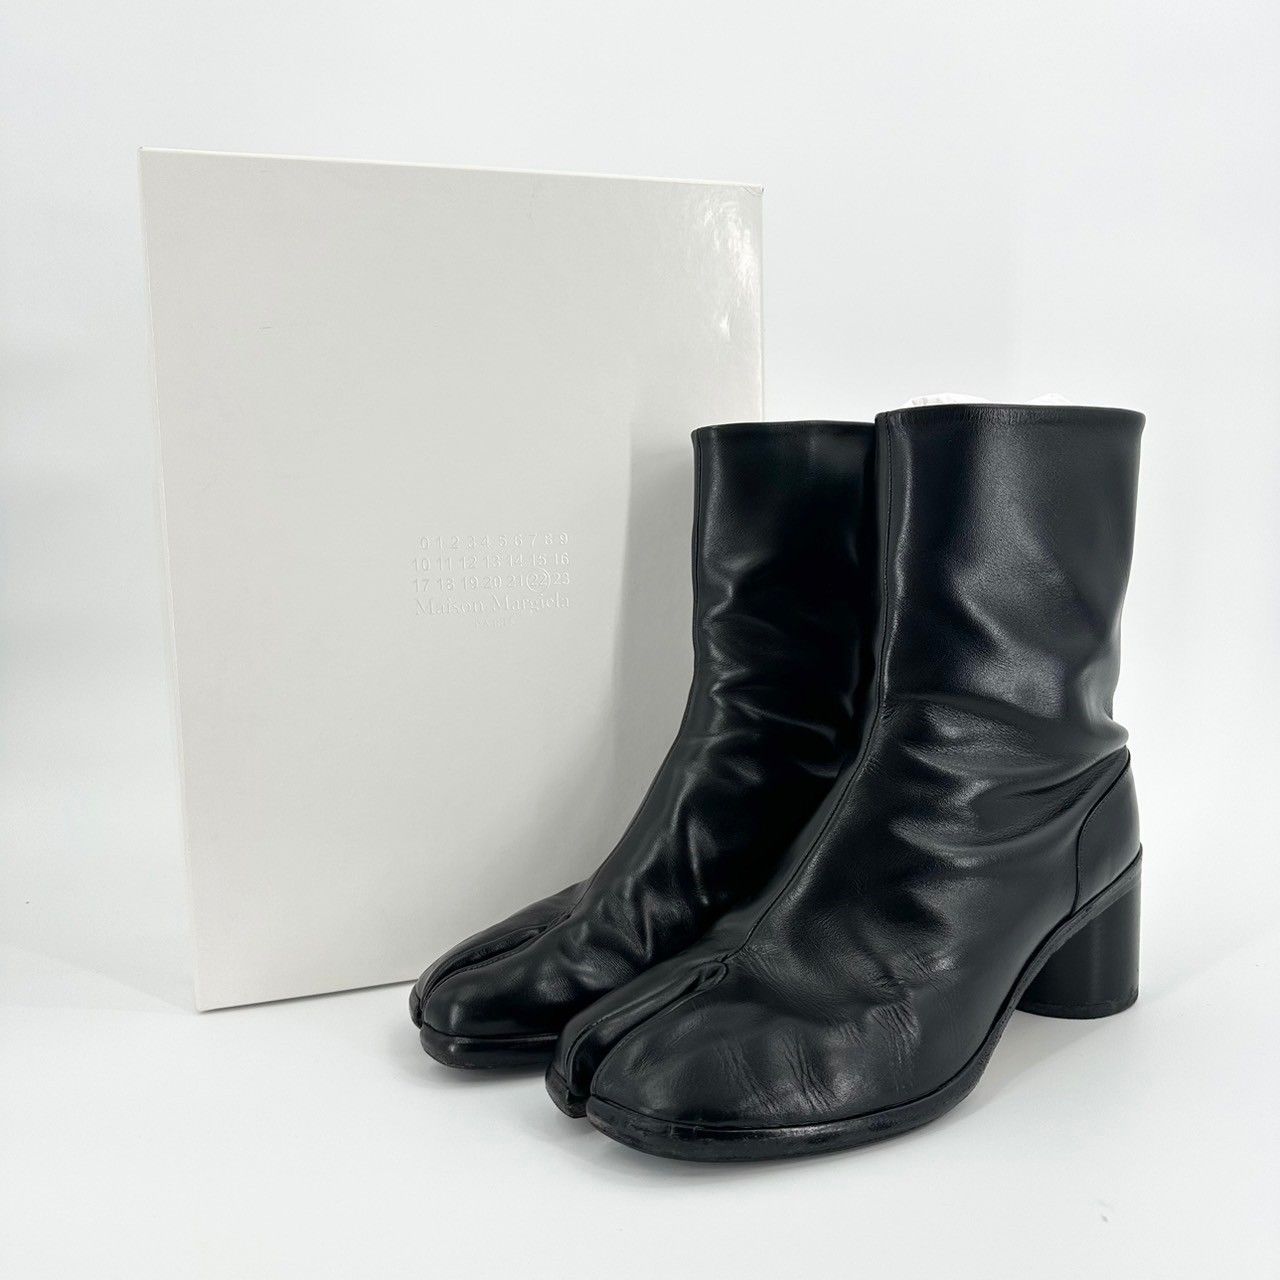 ♪　Maison Margiela メゾンマルジェラ S57WU0132 PR516 足袋ブーツ ブラック サイズ43 28～28.5cm相当  タビブーツ tabi boots